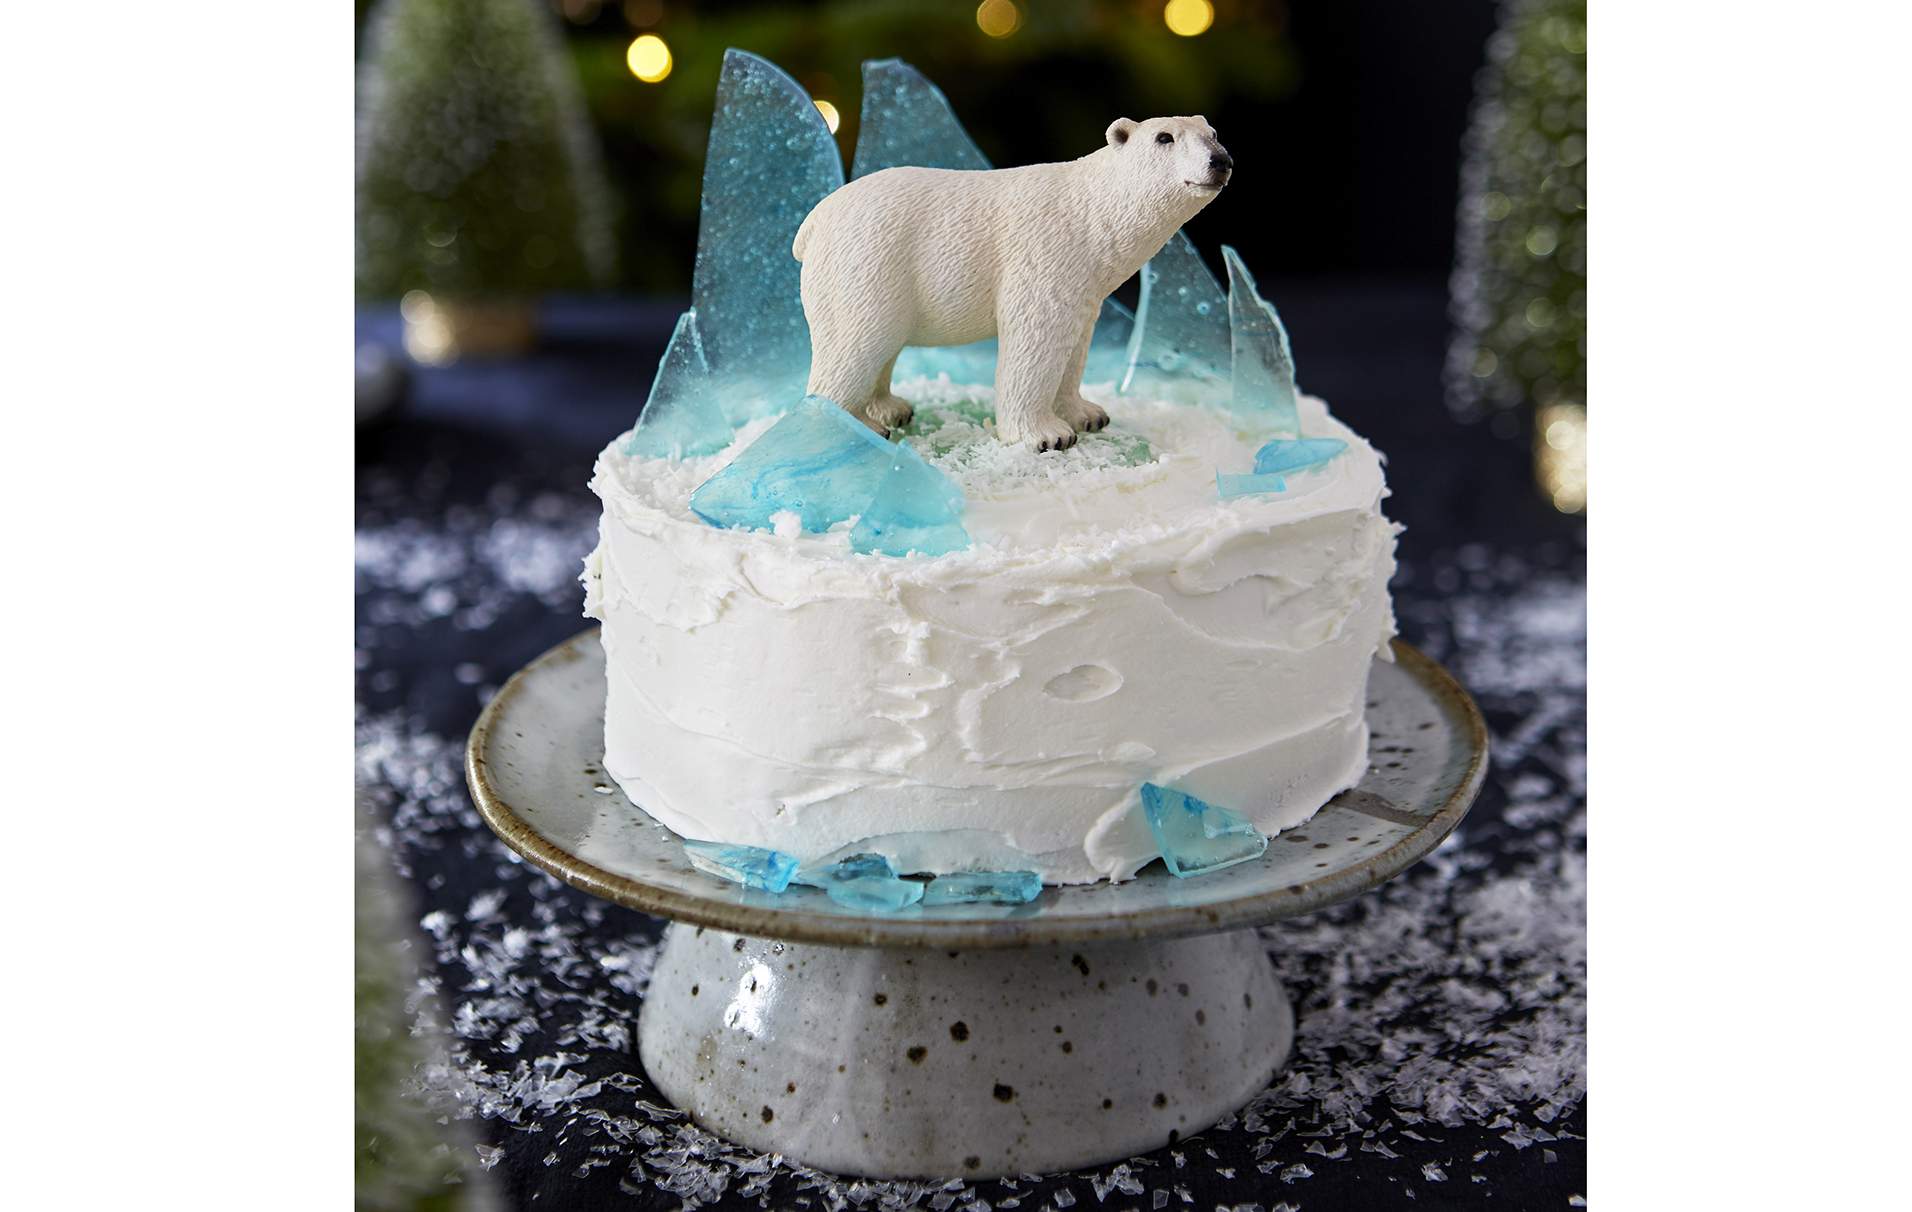 Pastel helado de oso polar
Ya sea que esté haciendo esto para niños (o probando la versión borracha para adultos), a todos les encantará este pastel helado de oso polar.